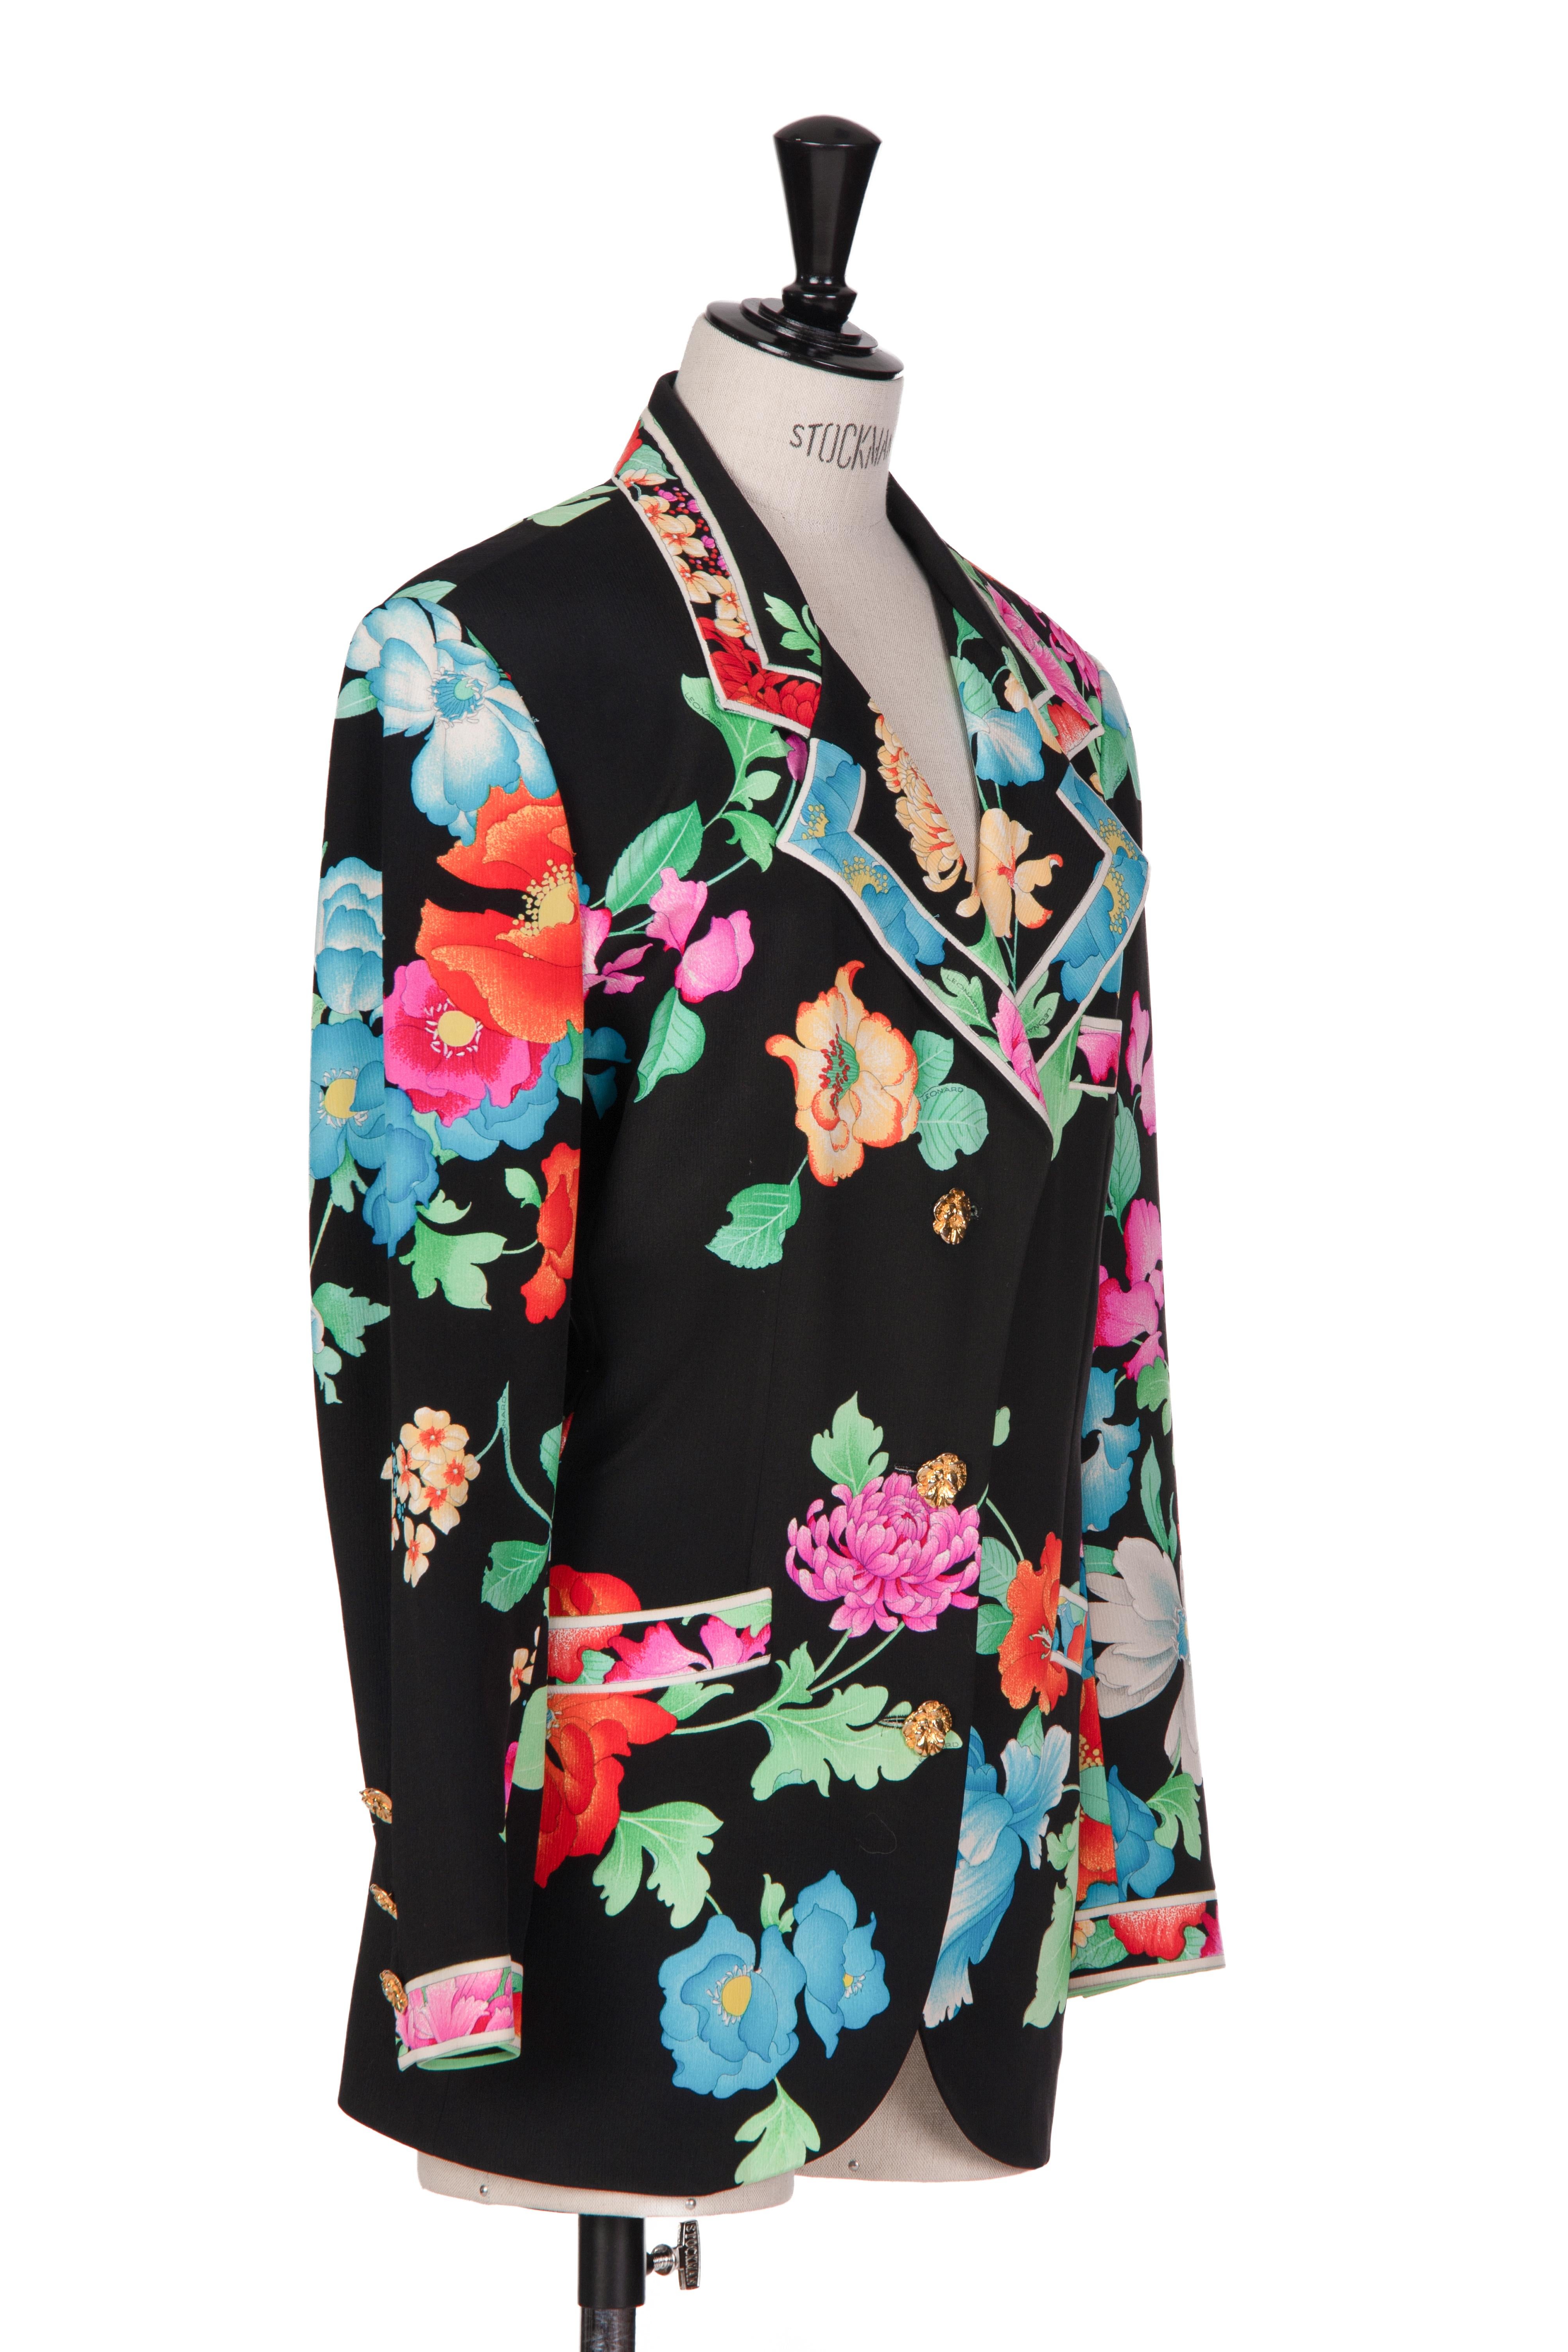 Voici un magnifique blazer Leonard Paris des années 1980 avec l'un des imprimés floraux caractéristiques de la maison de couture, immédiatement reconnaissable.
 
Le motif est réalisé en pure soie noire et présente un magnifique imprimé floral de